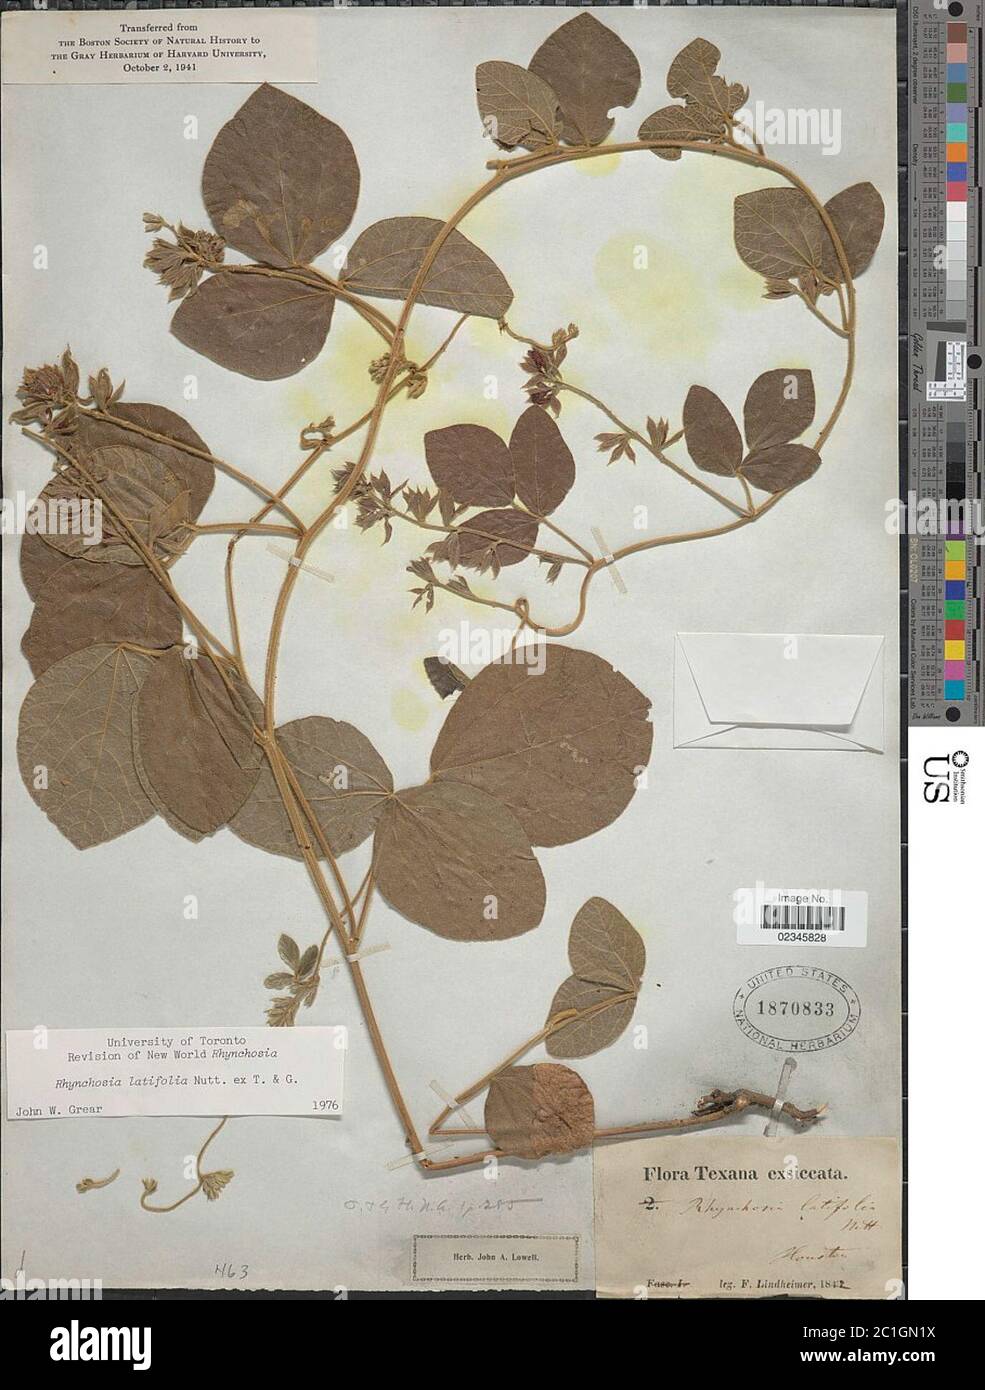 Rhynchosia latifolia Nutt ex Torr A Gray Rhynchosia latifolia Nutt ex Torr A Gray. Stock Photo